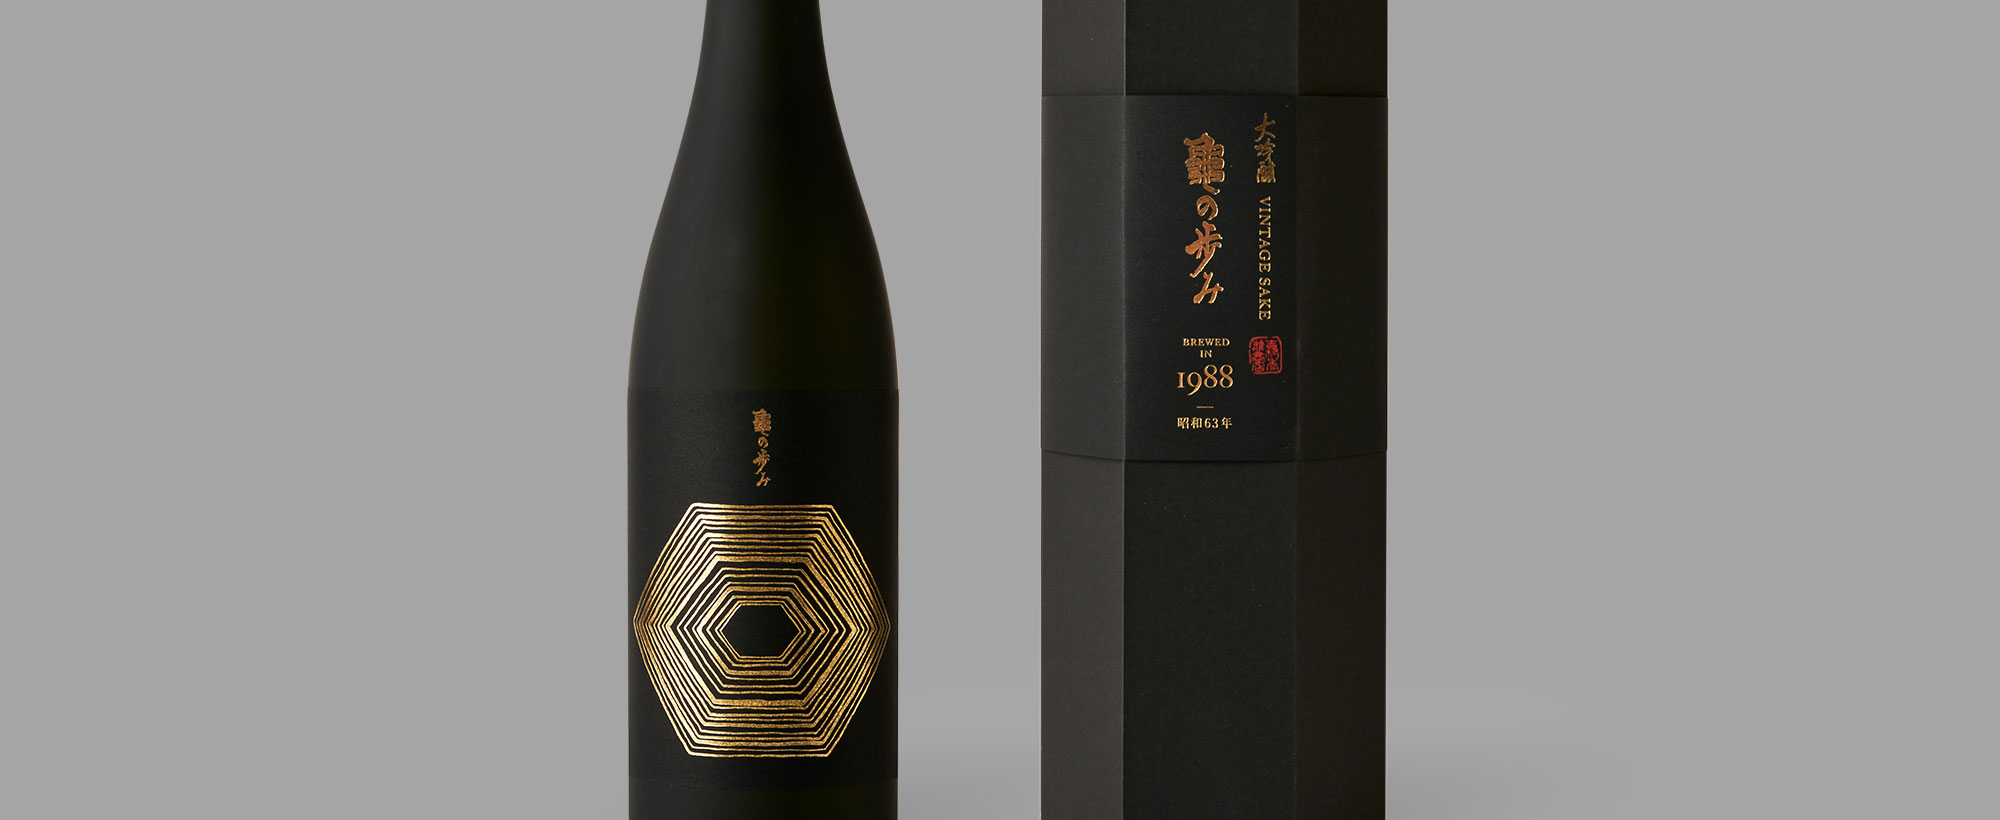 Aged sake